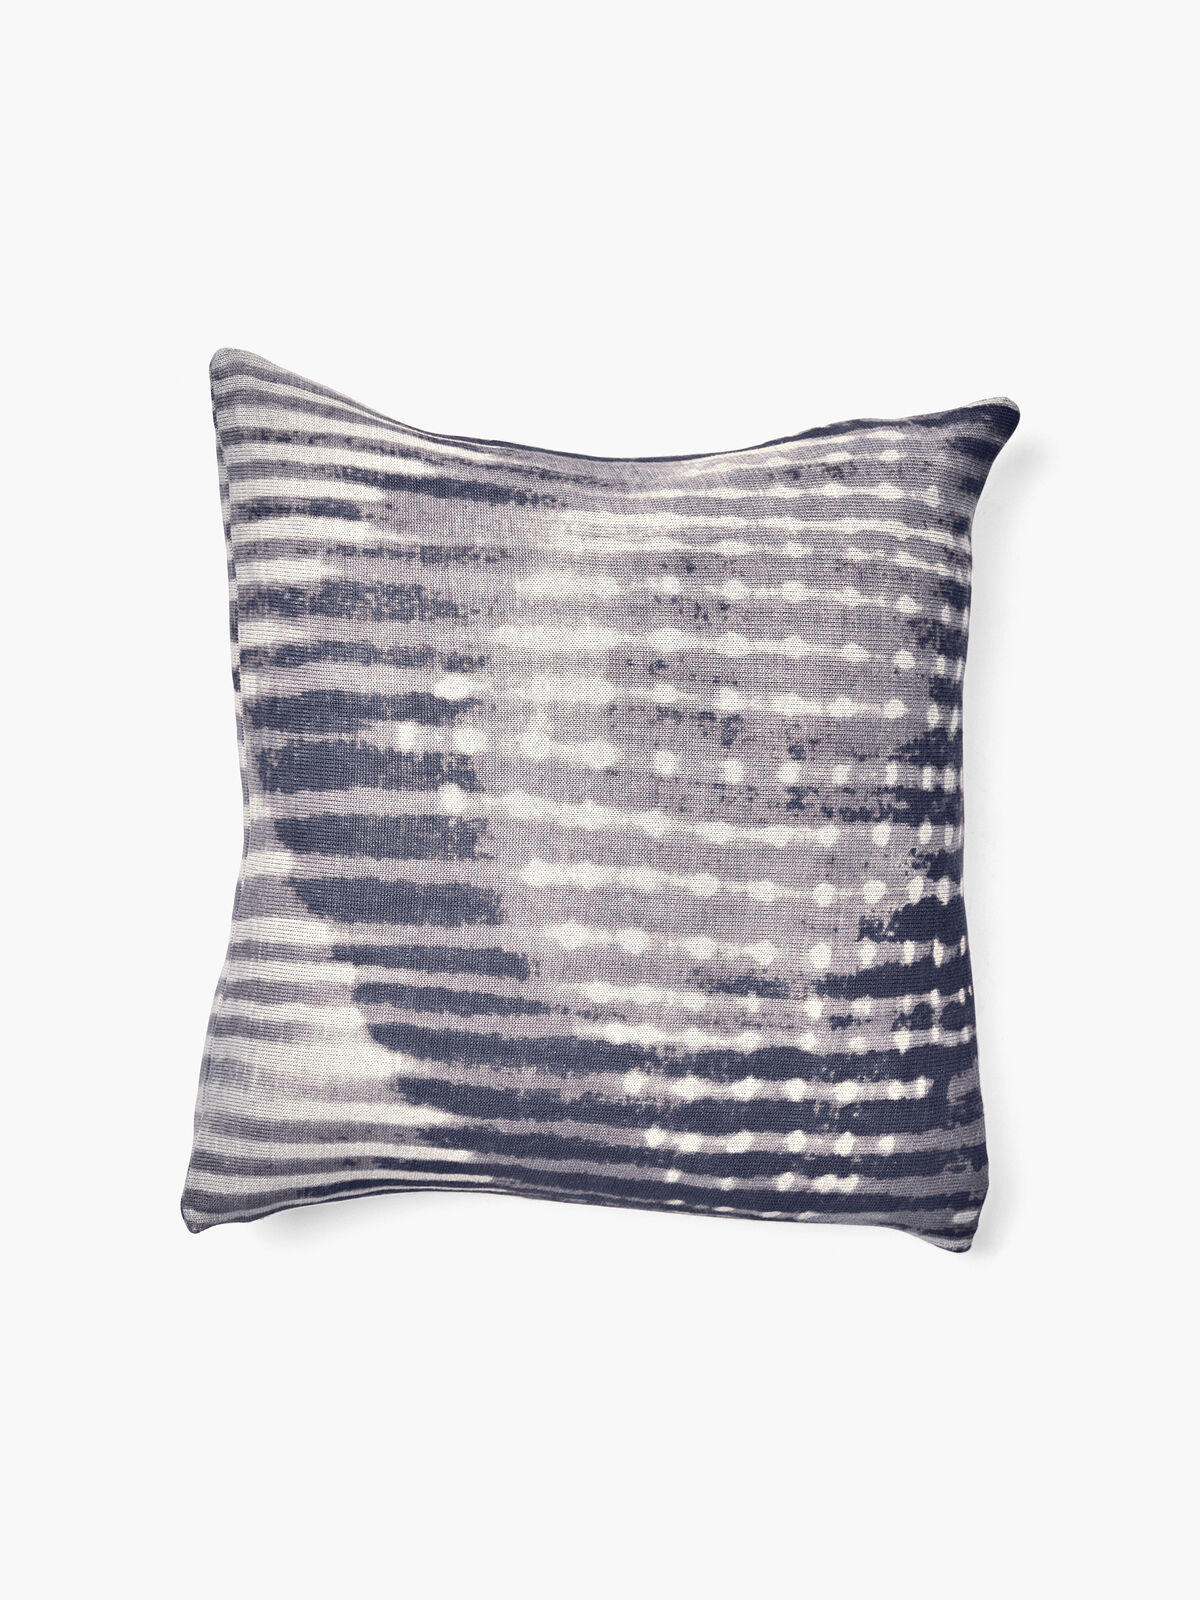 Shibori Blues Pillow